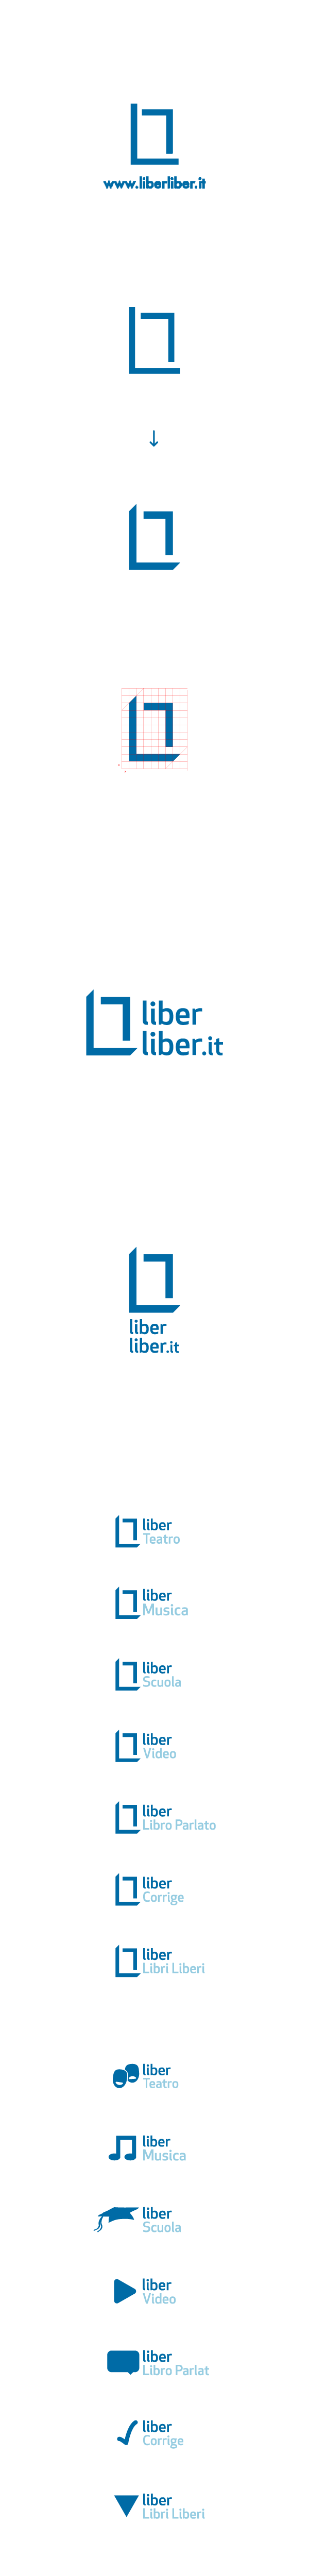 liberliber liber blue online book audiobook video library